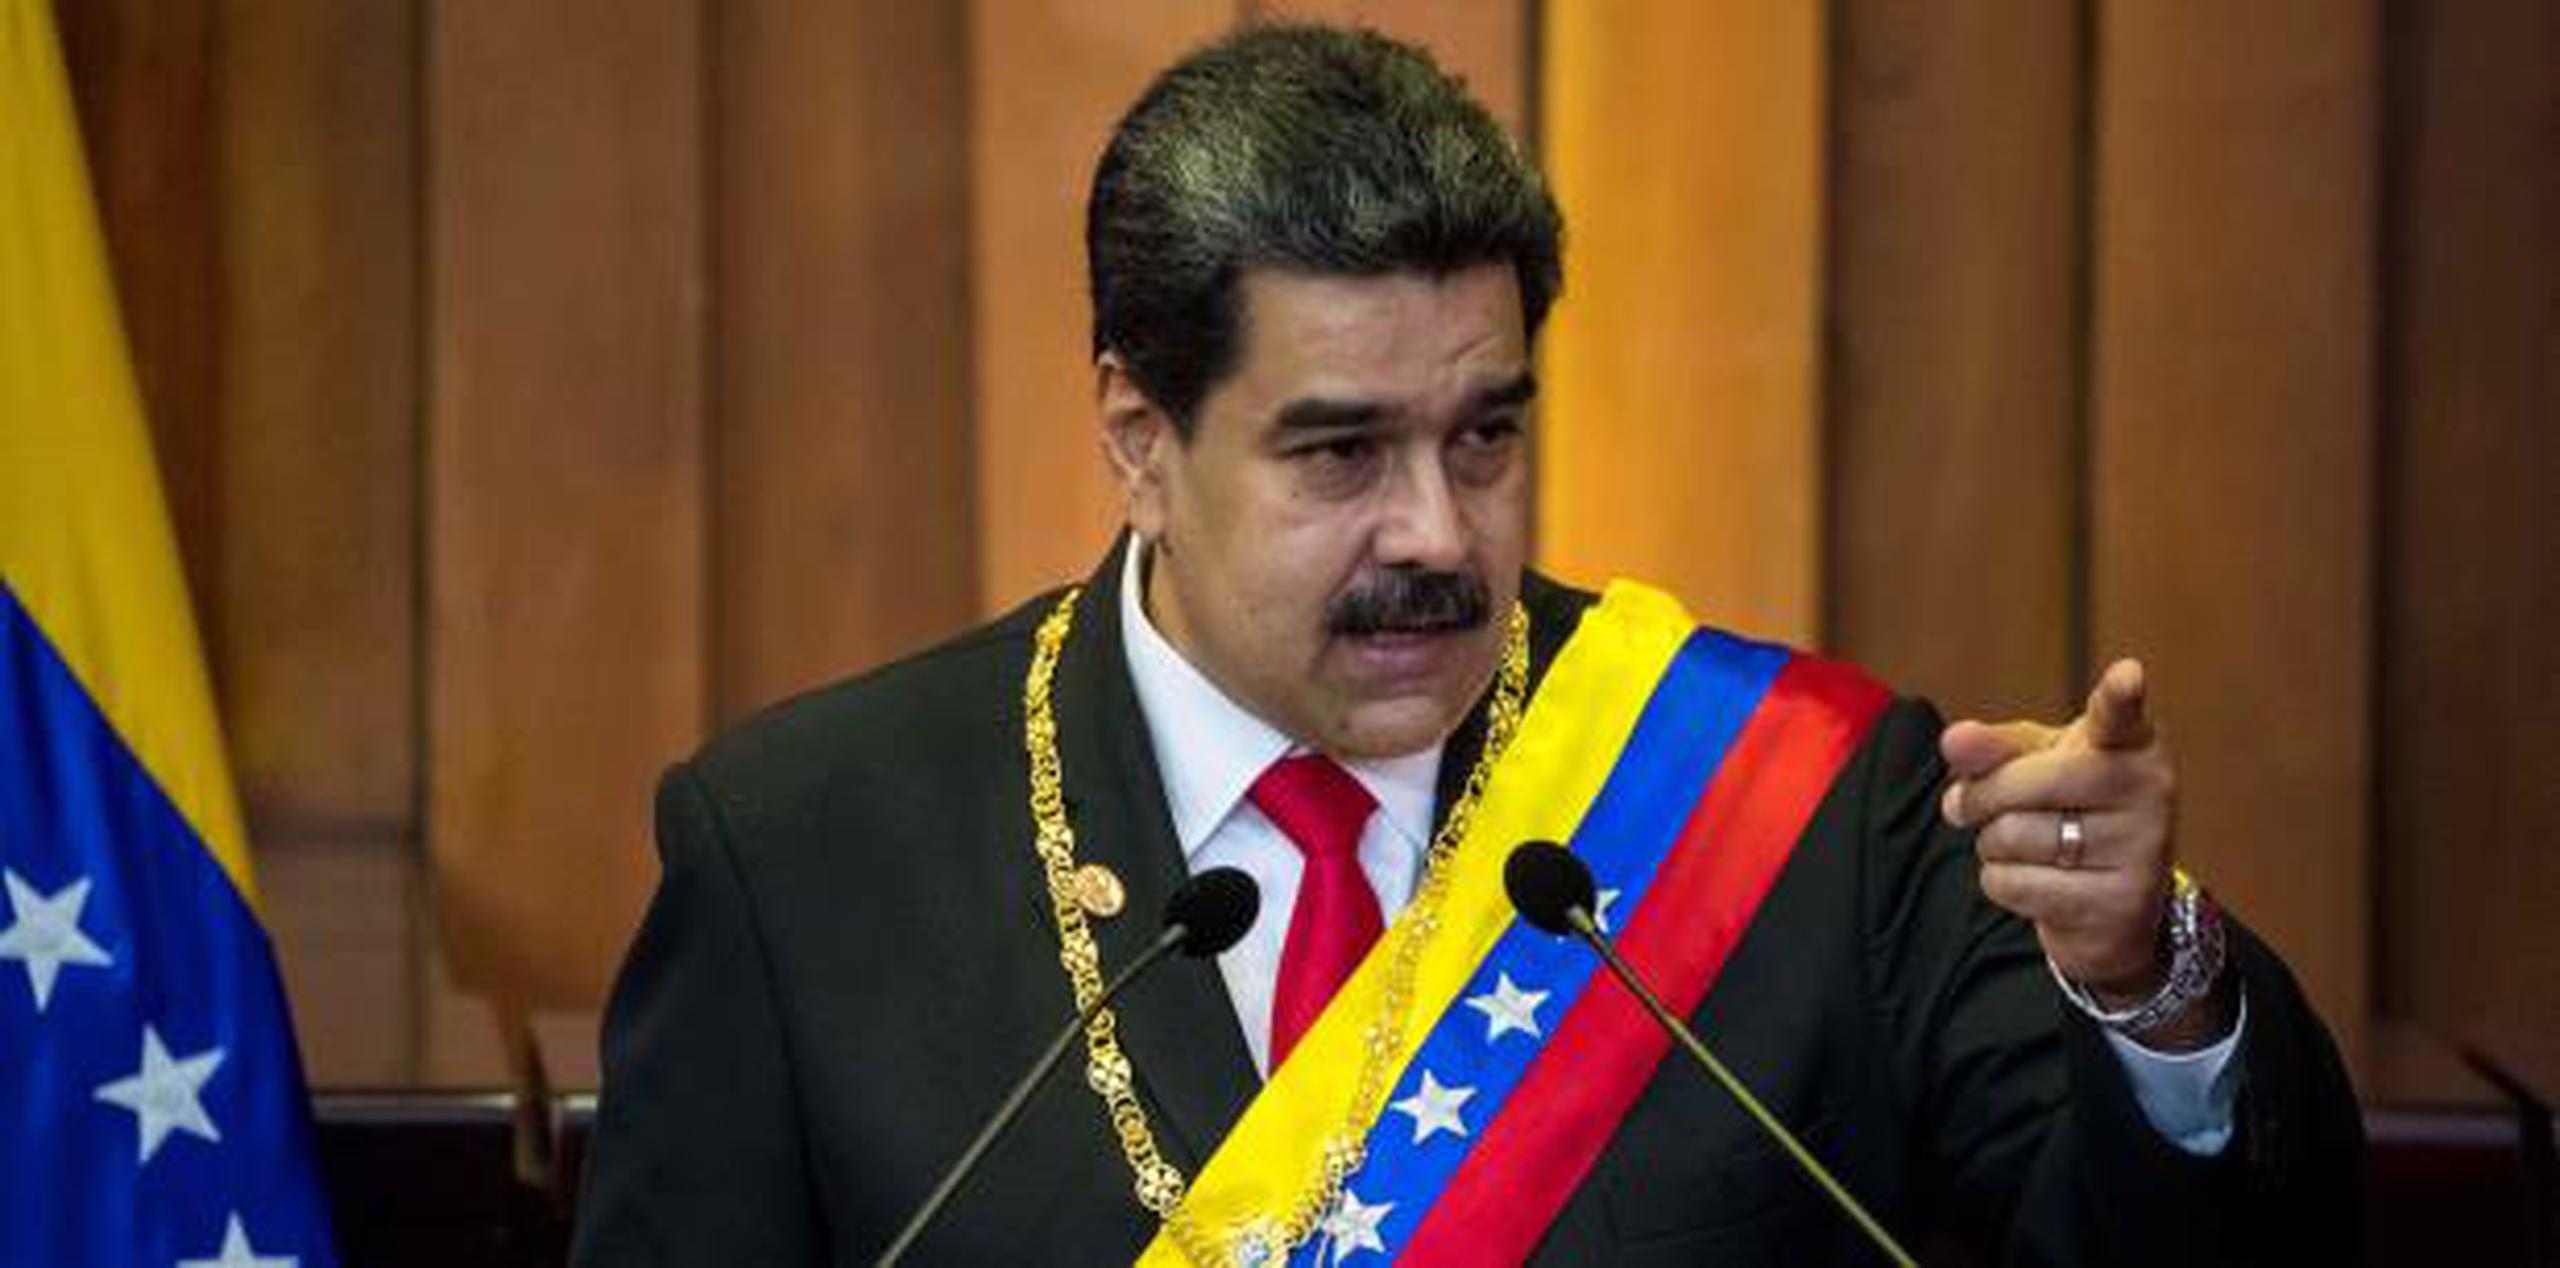 Según Maduro, Washington busca intervenir en las elecciones venezolanas porque sabe que "no puede ganar". (AP)

